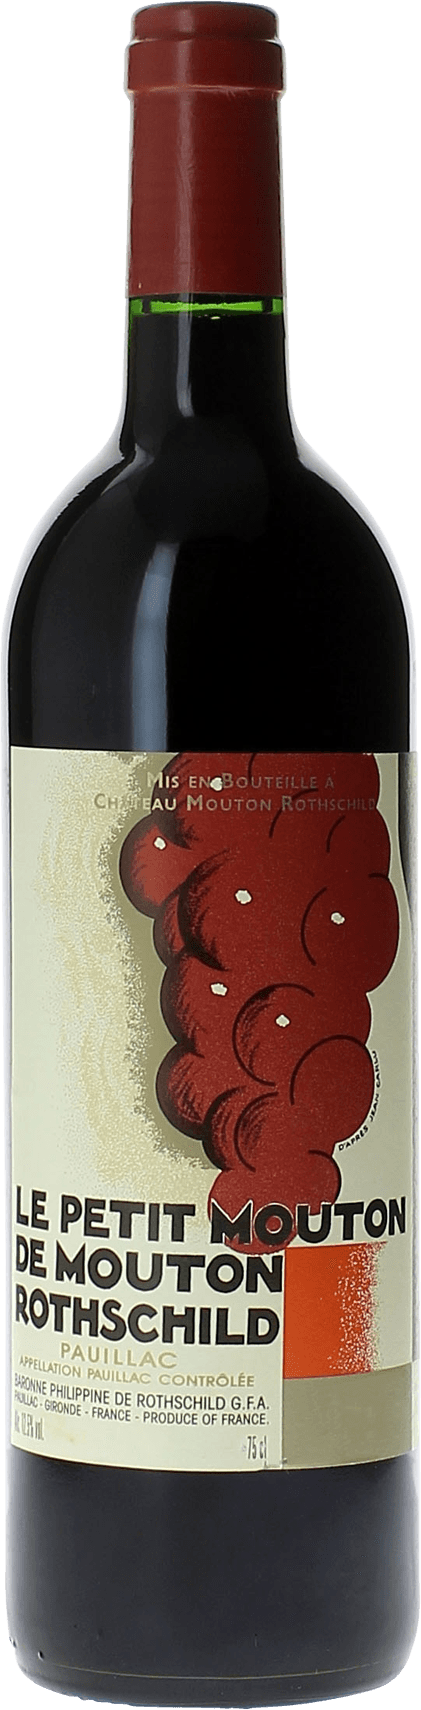 Petit mouton 2015 2nd vin de Mouton Rothschild Pauillac, Bordeaux rouge